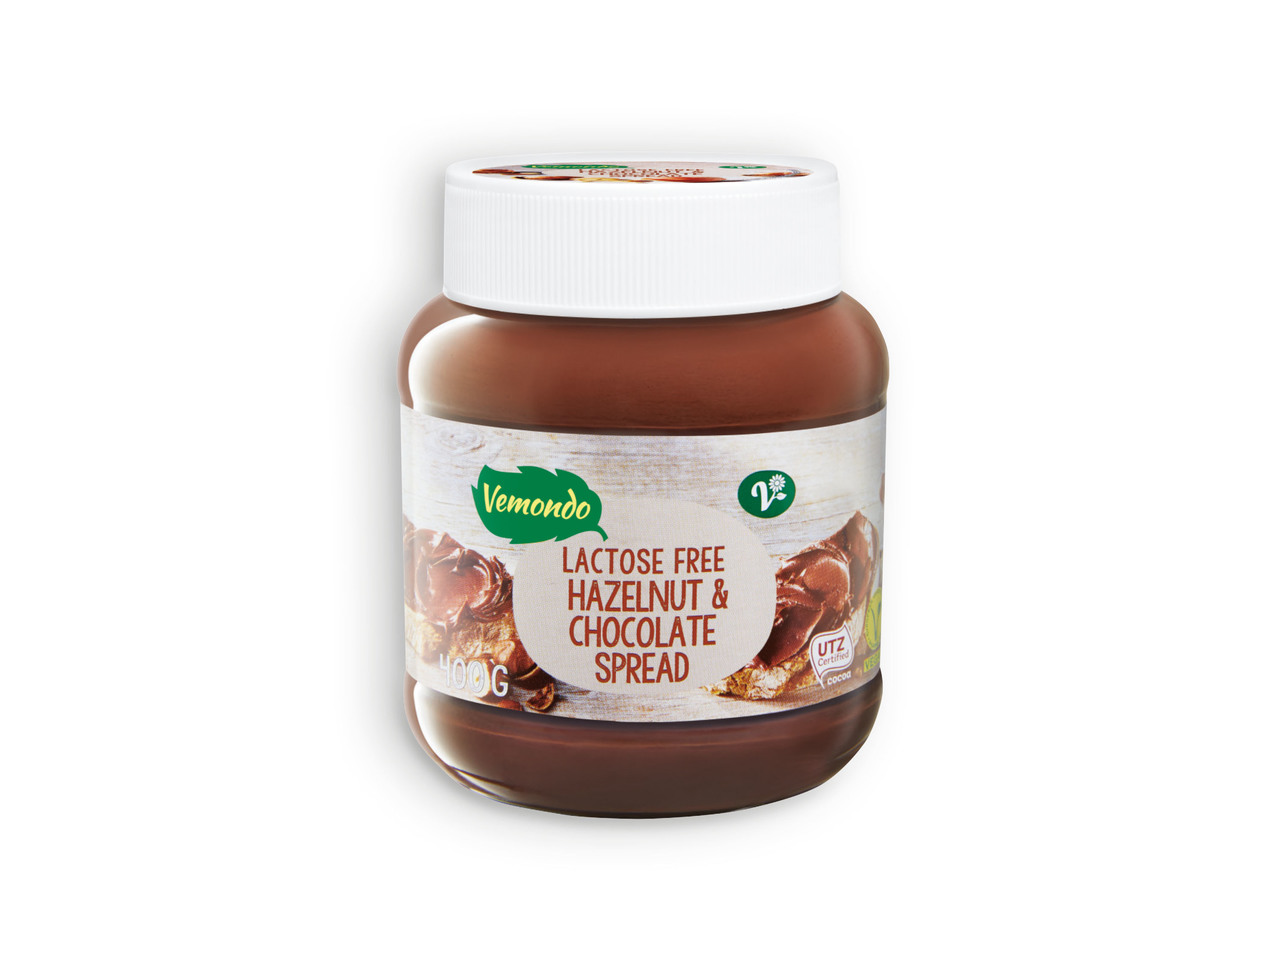 VEMONDO(R) Creme de Chocolate e Avelãs sem Lactose